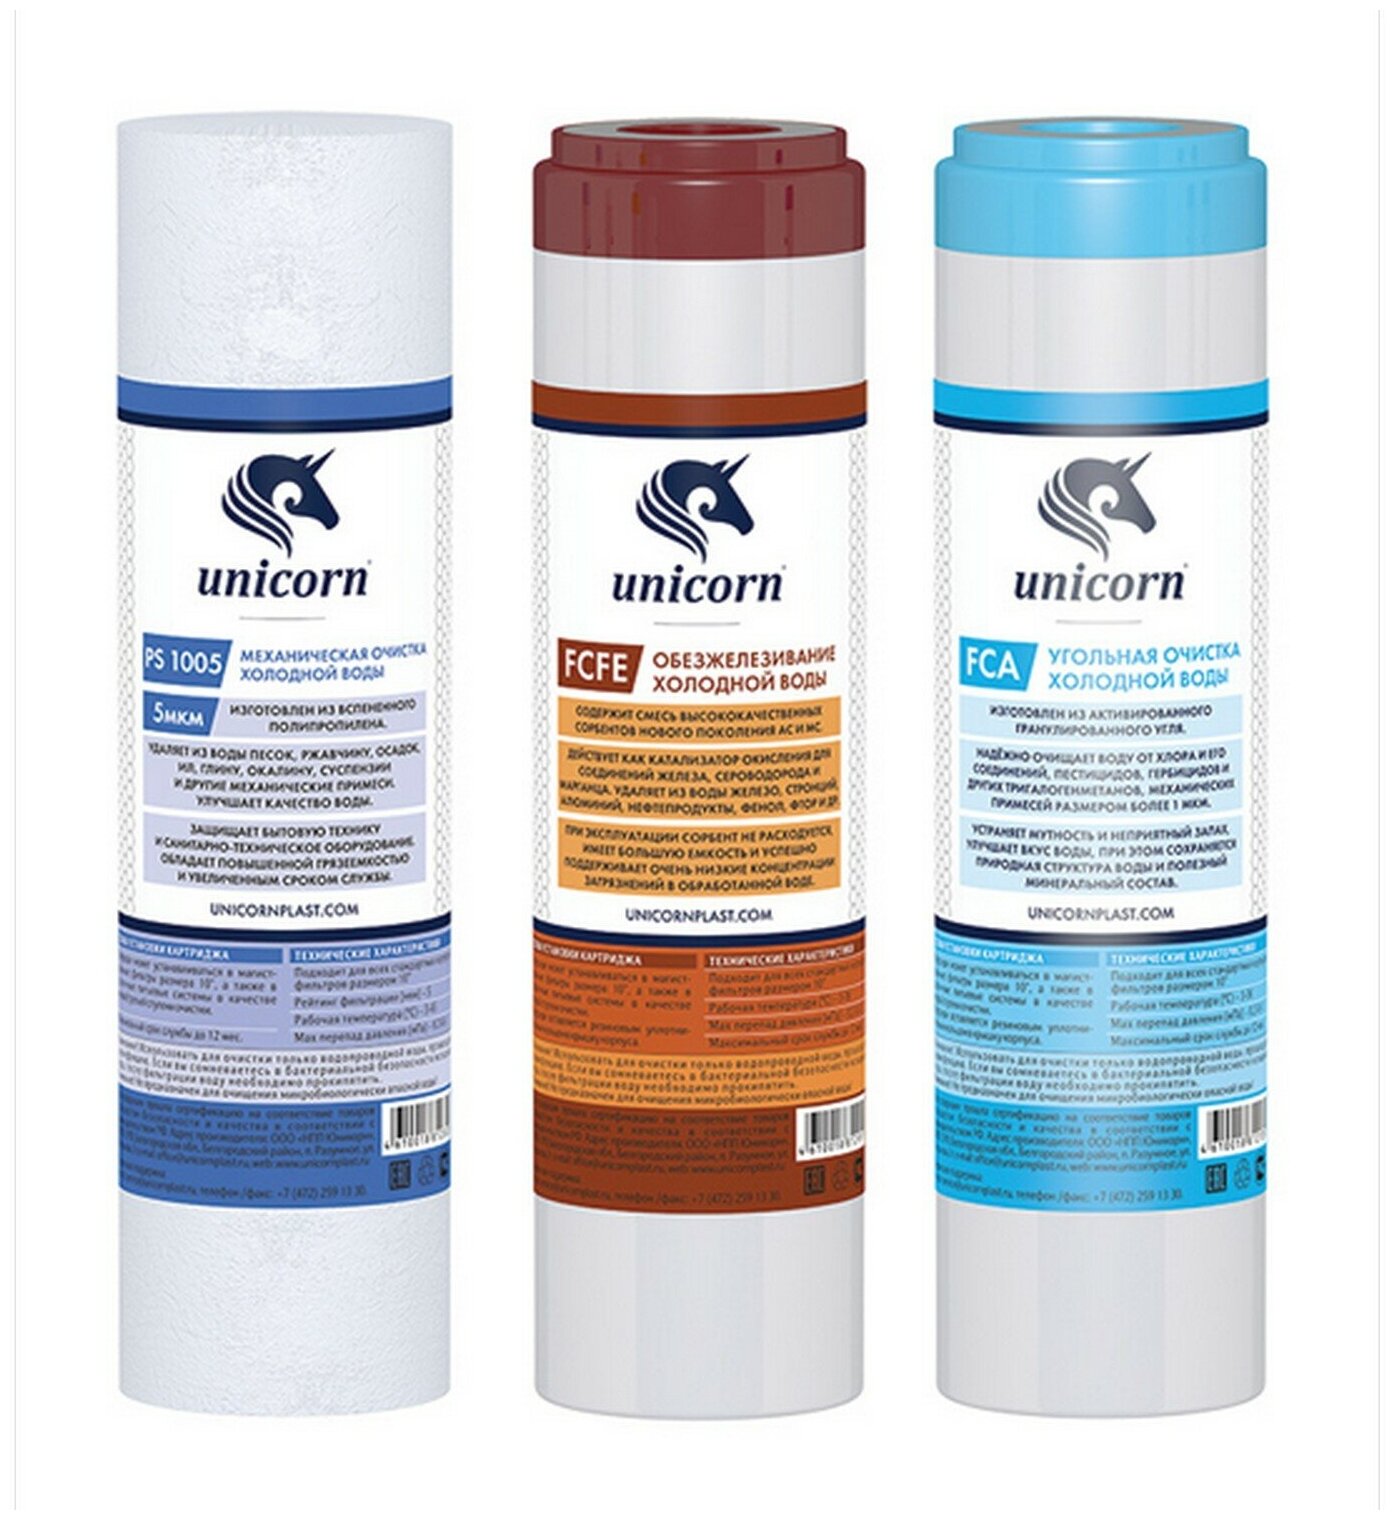 Unicorn Комплект картриджей для питьевых систем PS-10, FCFE-10, FCA-10 UNICORN (K-FE), 1 уп, 3 шт.